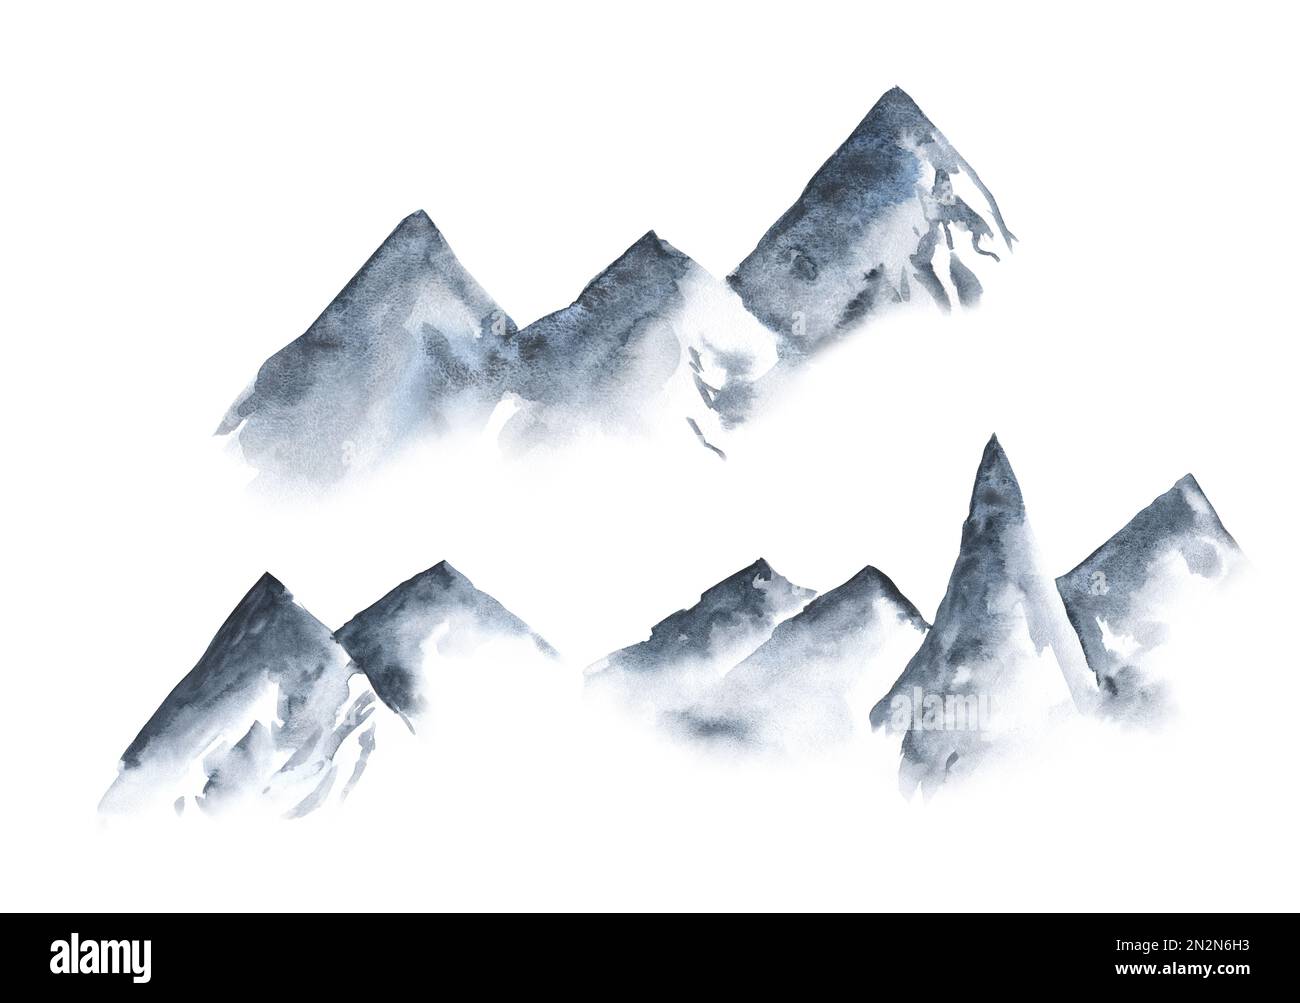 Blue Mountains dans le brouillard dessiné à la main avec aquarelle dans un style minimaliste. Peinture à l'encre orientale traditionnelle sumi-e, u-sin, Go-hua. l'éternité, l'esprit, la paix Banque D'Images